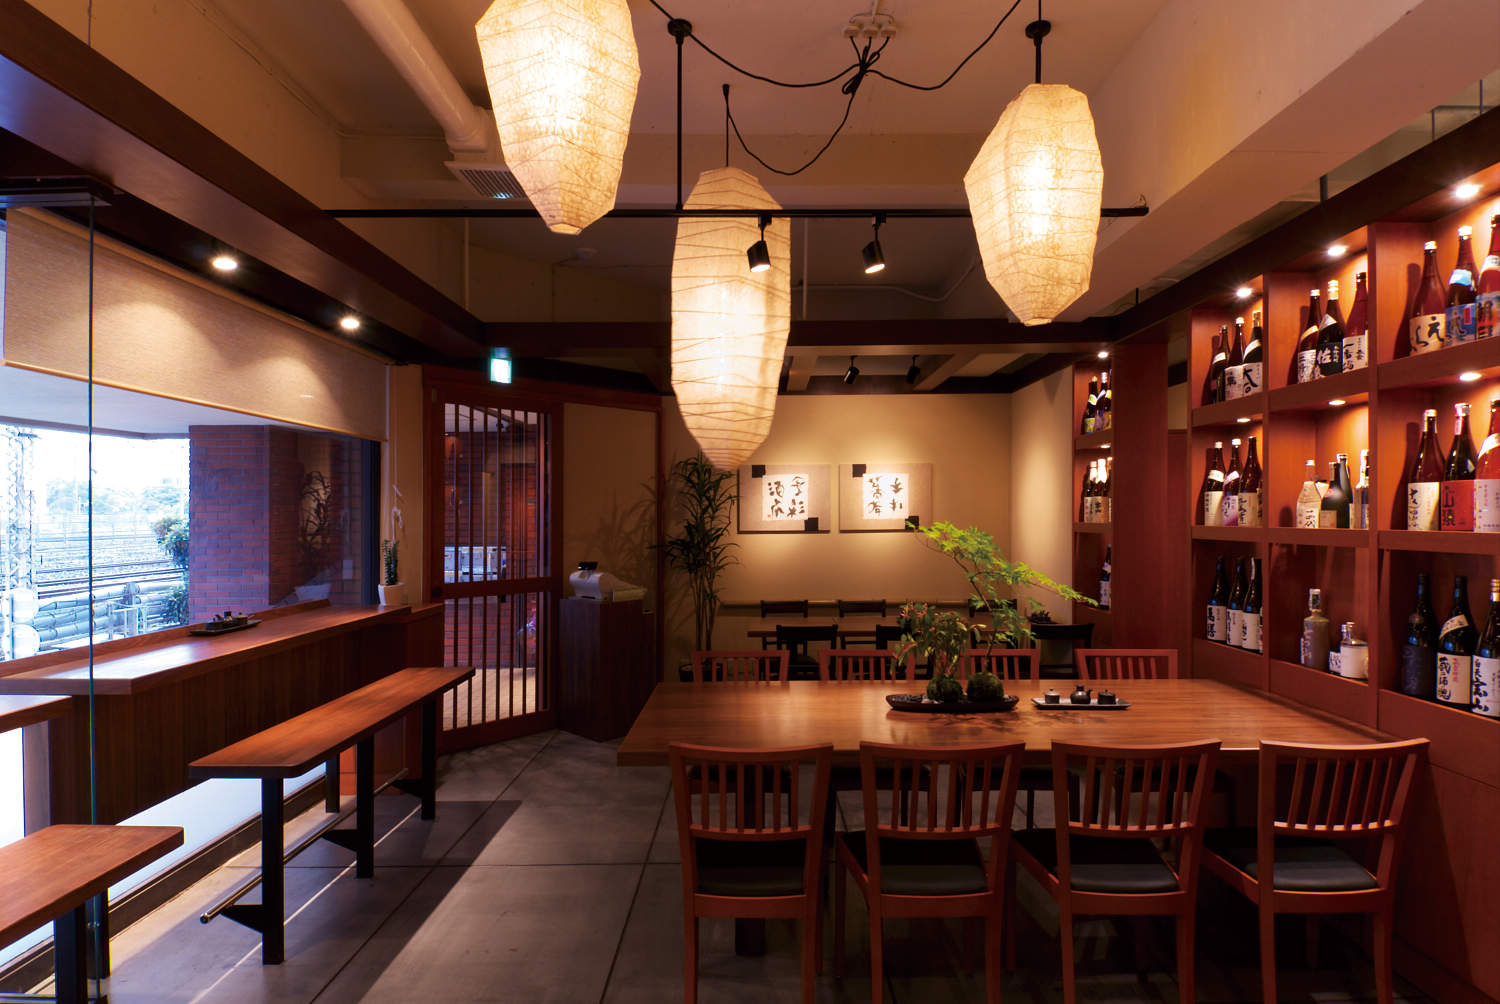 Japanese Plaster - Traditional Restaurant Design